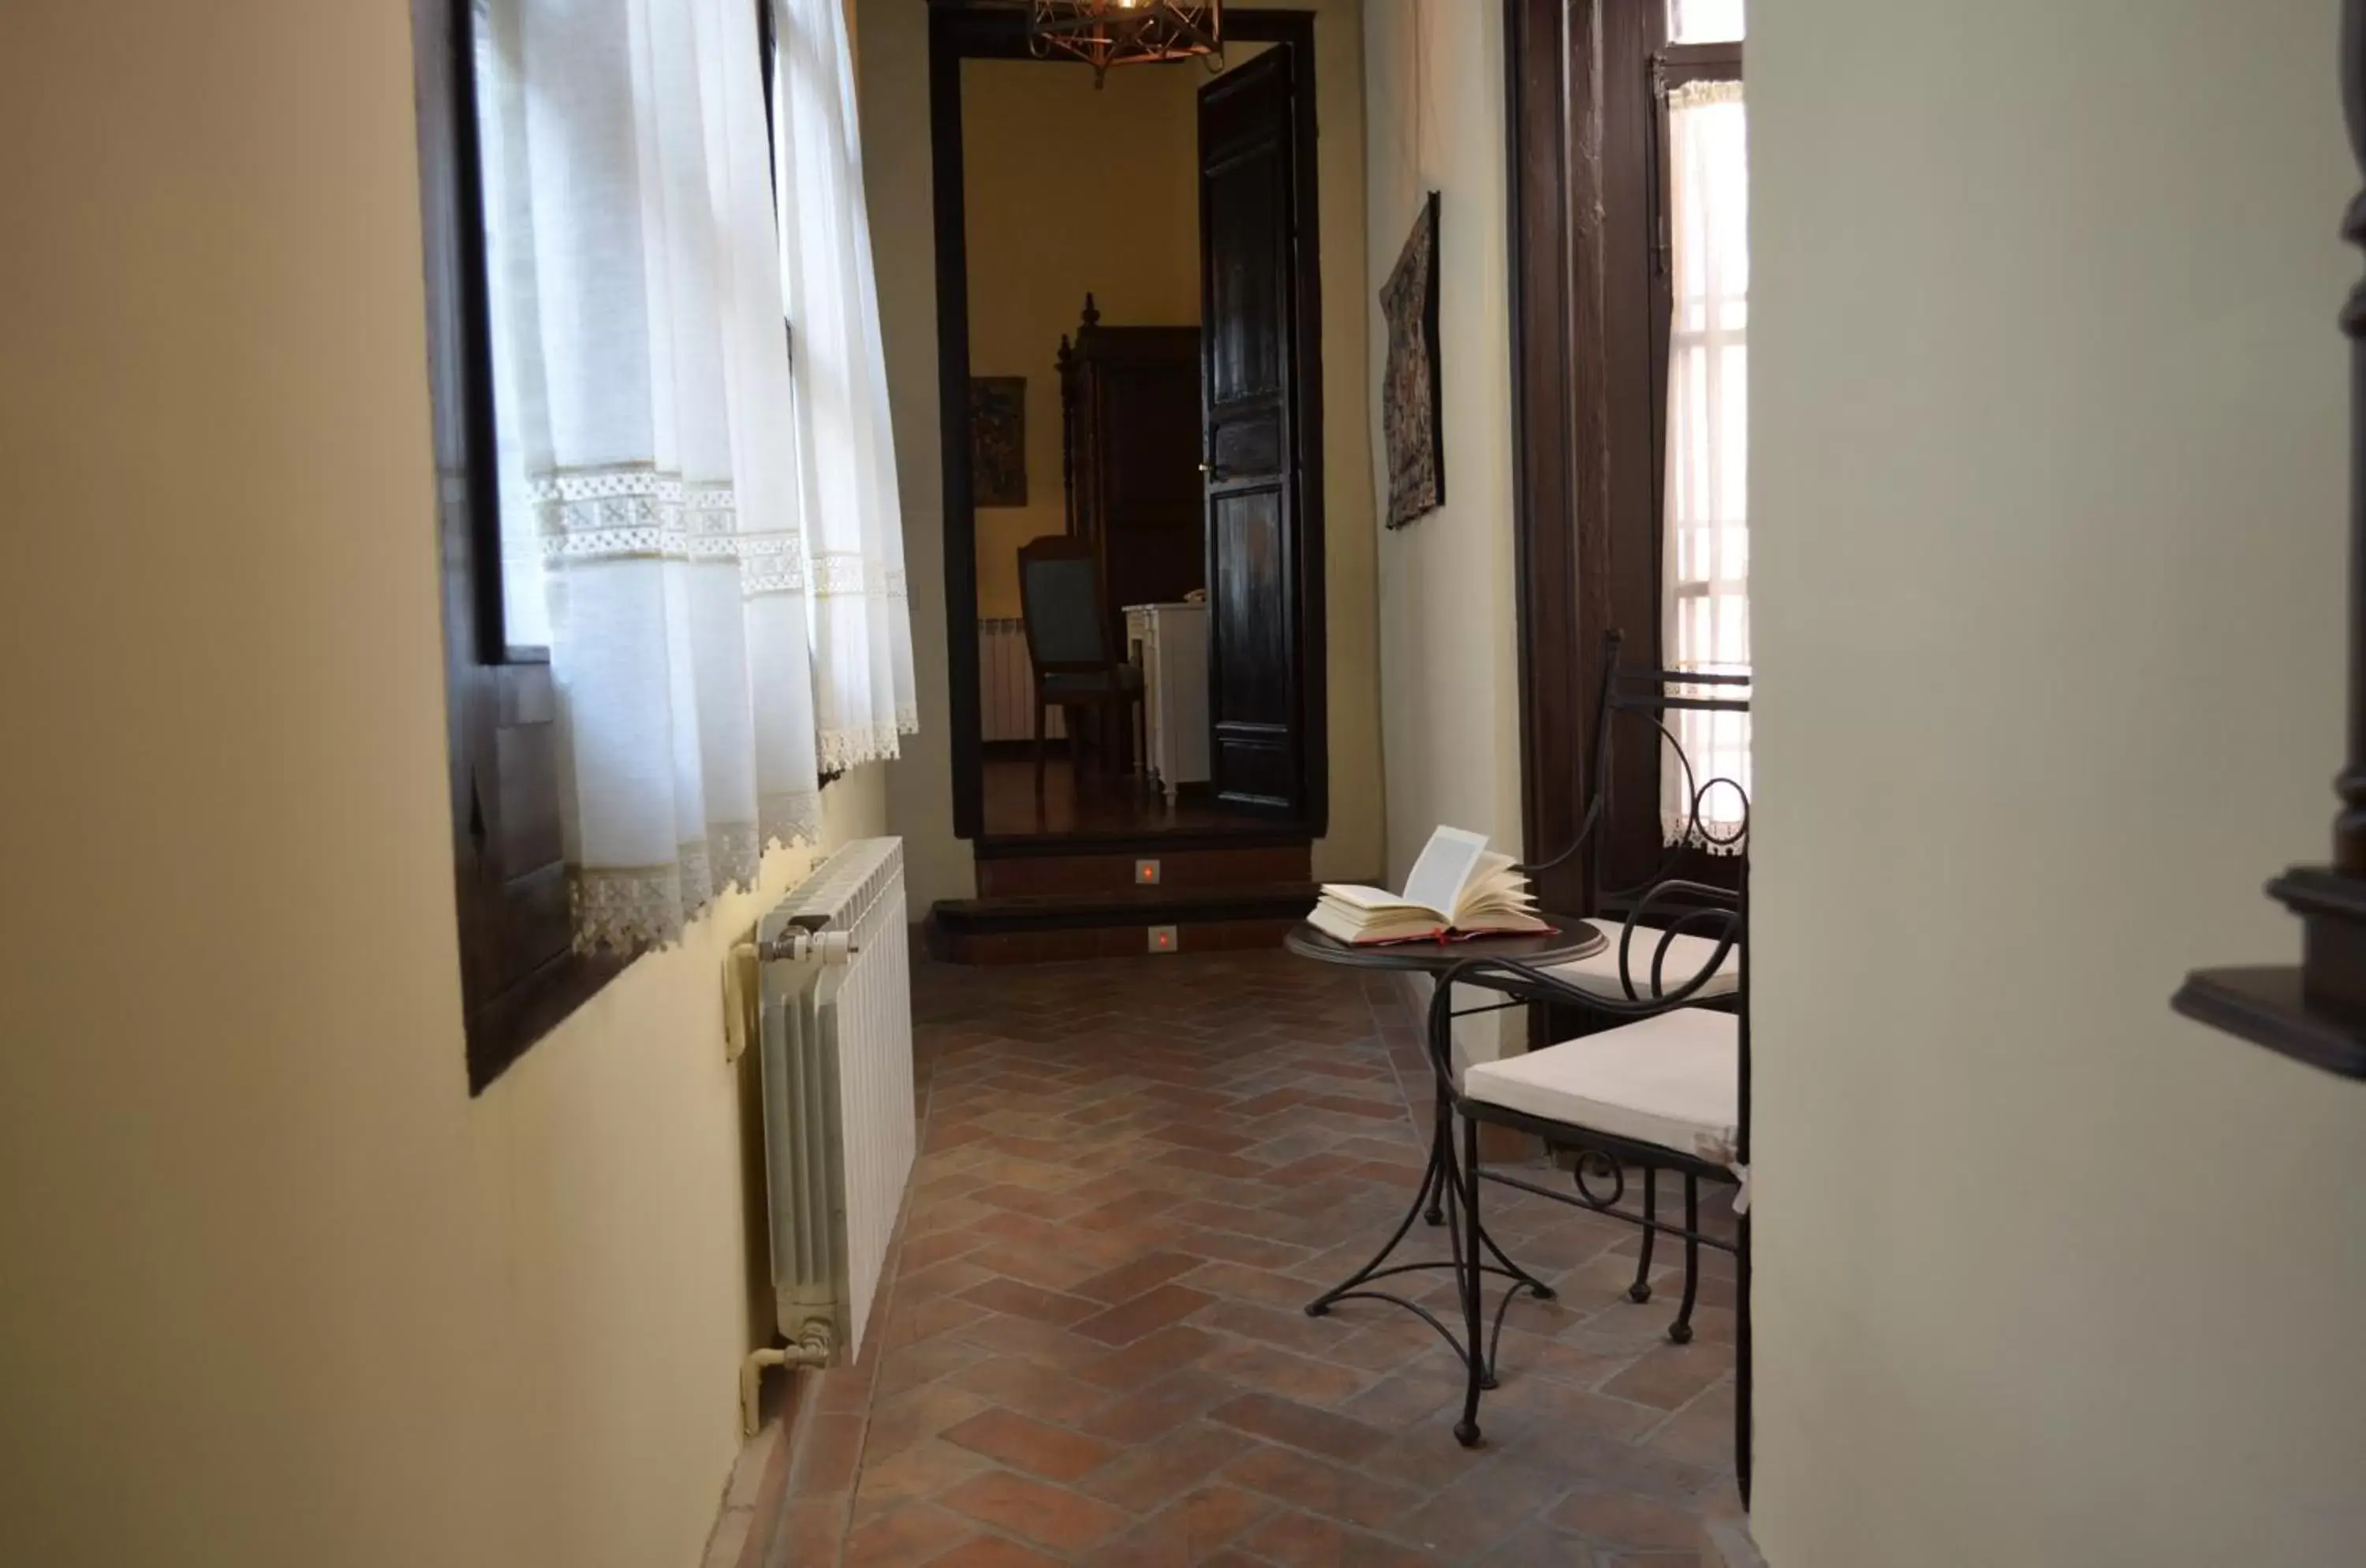 Bedroom in Palacio de Mariana Pineda